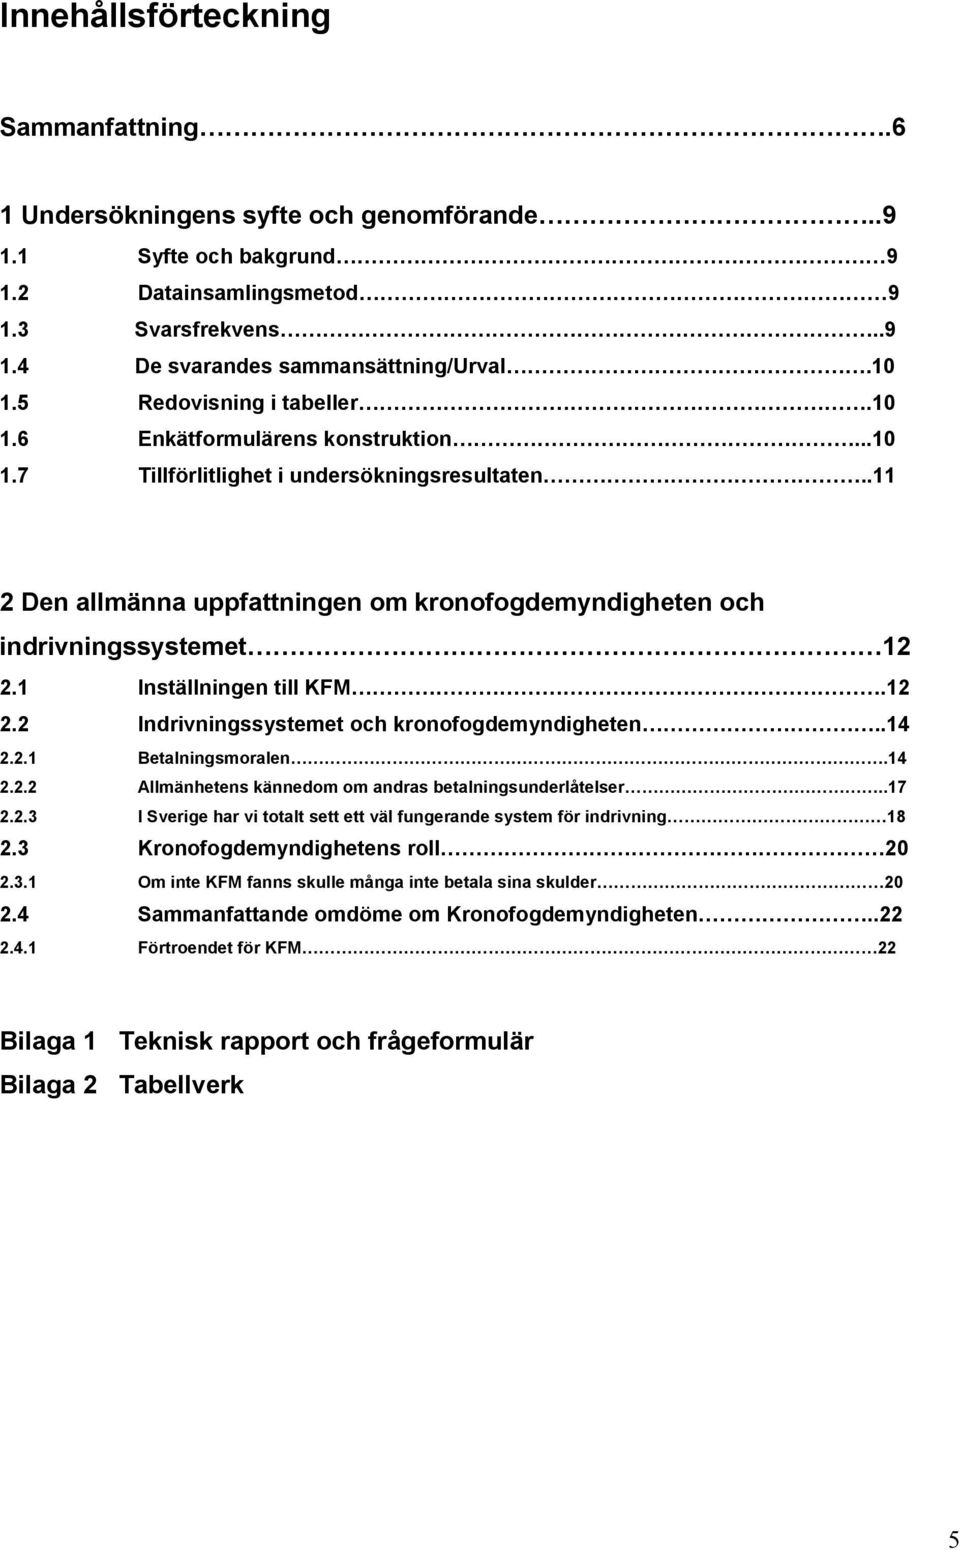 1 Inställningen till KFM.12 2.2 Indrivningssystemet och kronofogdemyndigheten..14 2.2.1 Betalningsmoralen.14 2.2.2 Allmänhetens kännedom om andras betalningsunderlåtelser..17 2.2.3 I Sverige har vi totalt sett ett väl fungerande system för indrivning 18 2.